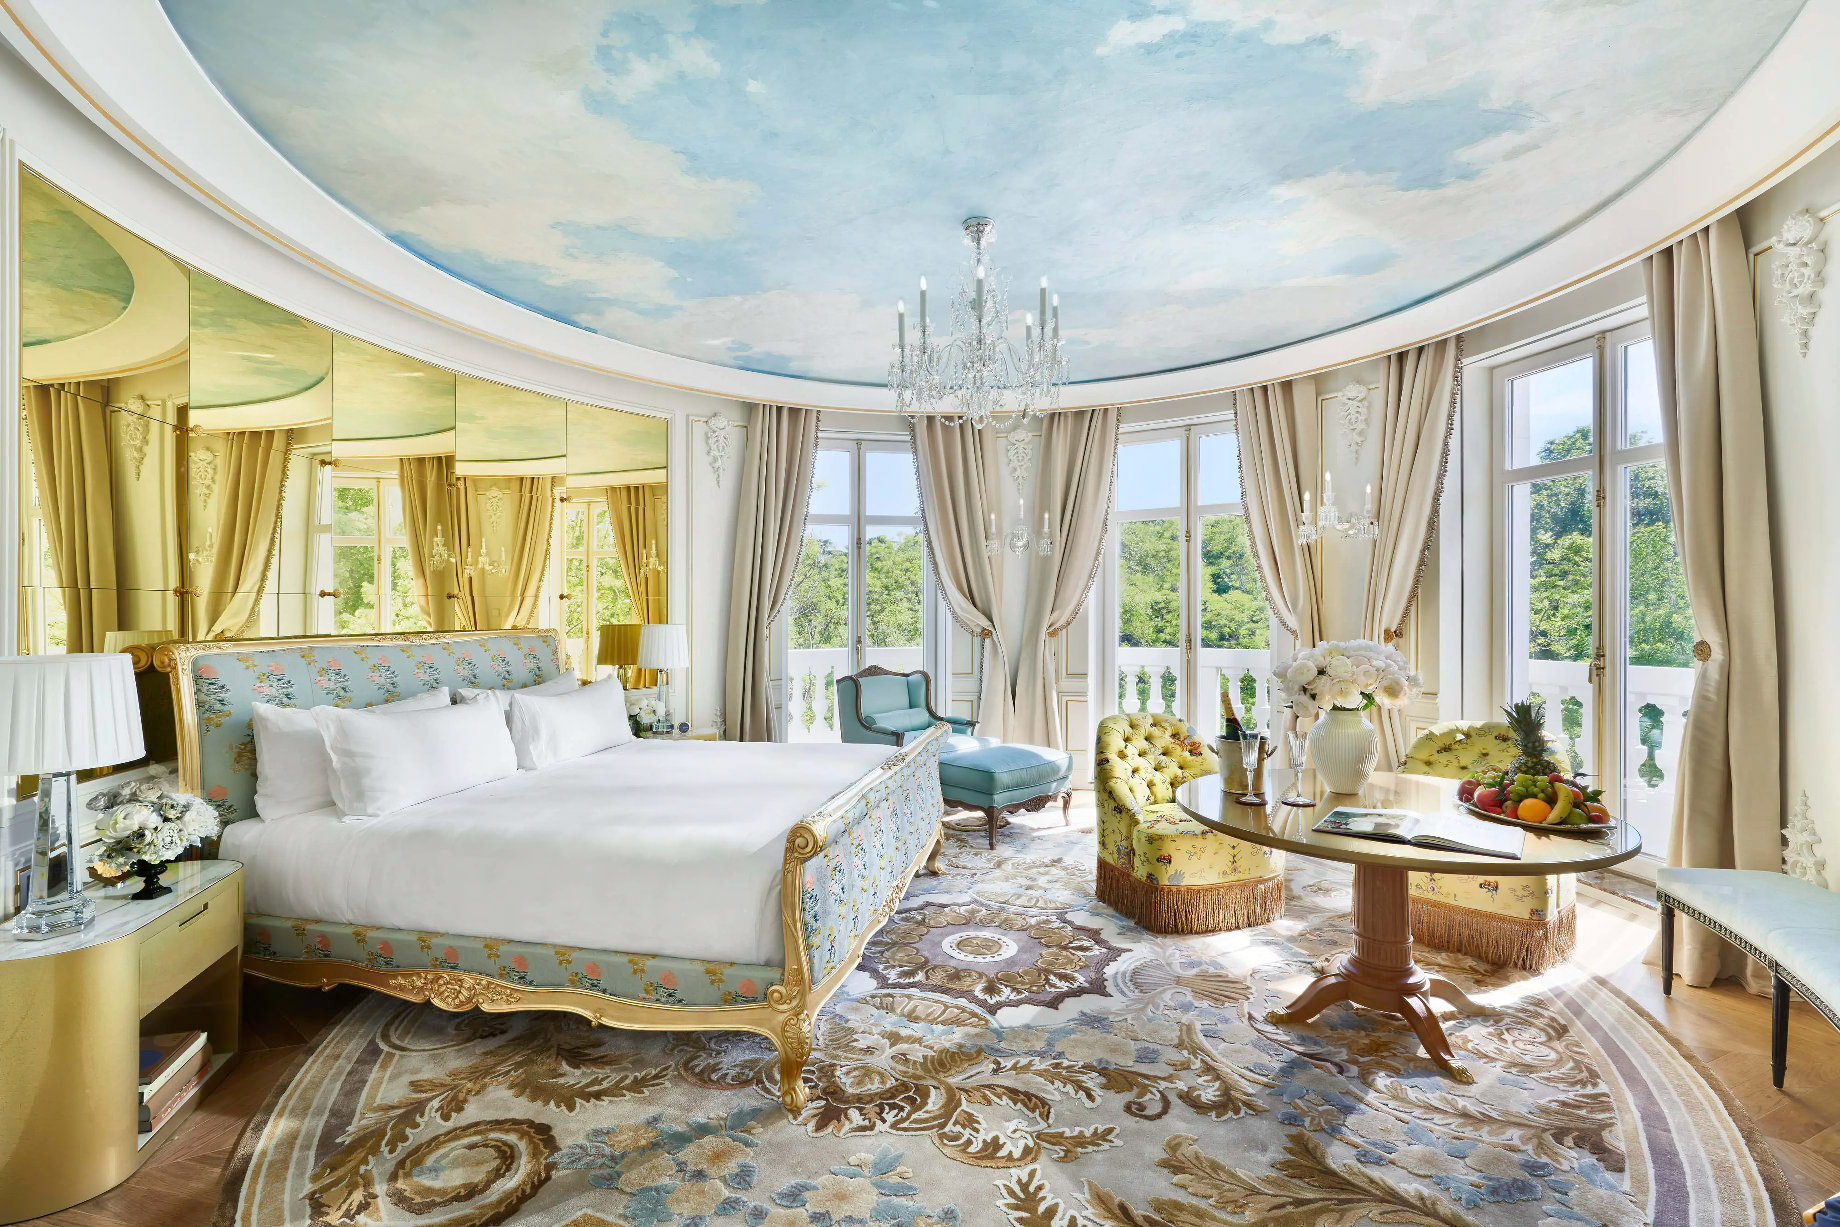 Mandarin Oriental Ritz, Madrid Hotel - Madrid, Spain - Royal Suite Bedroom